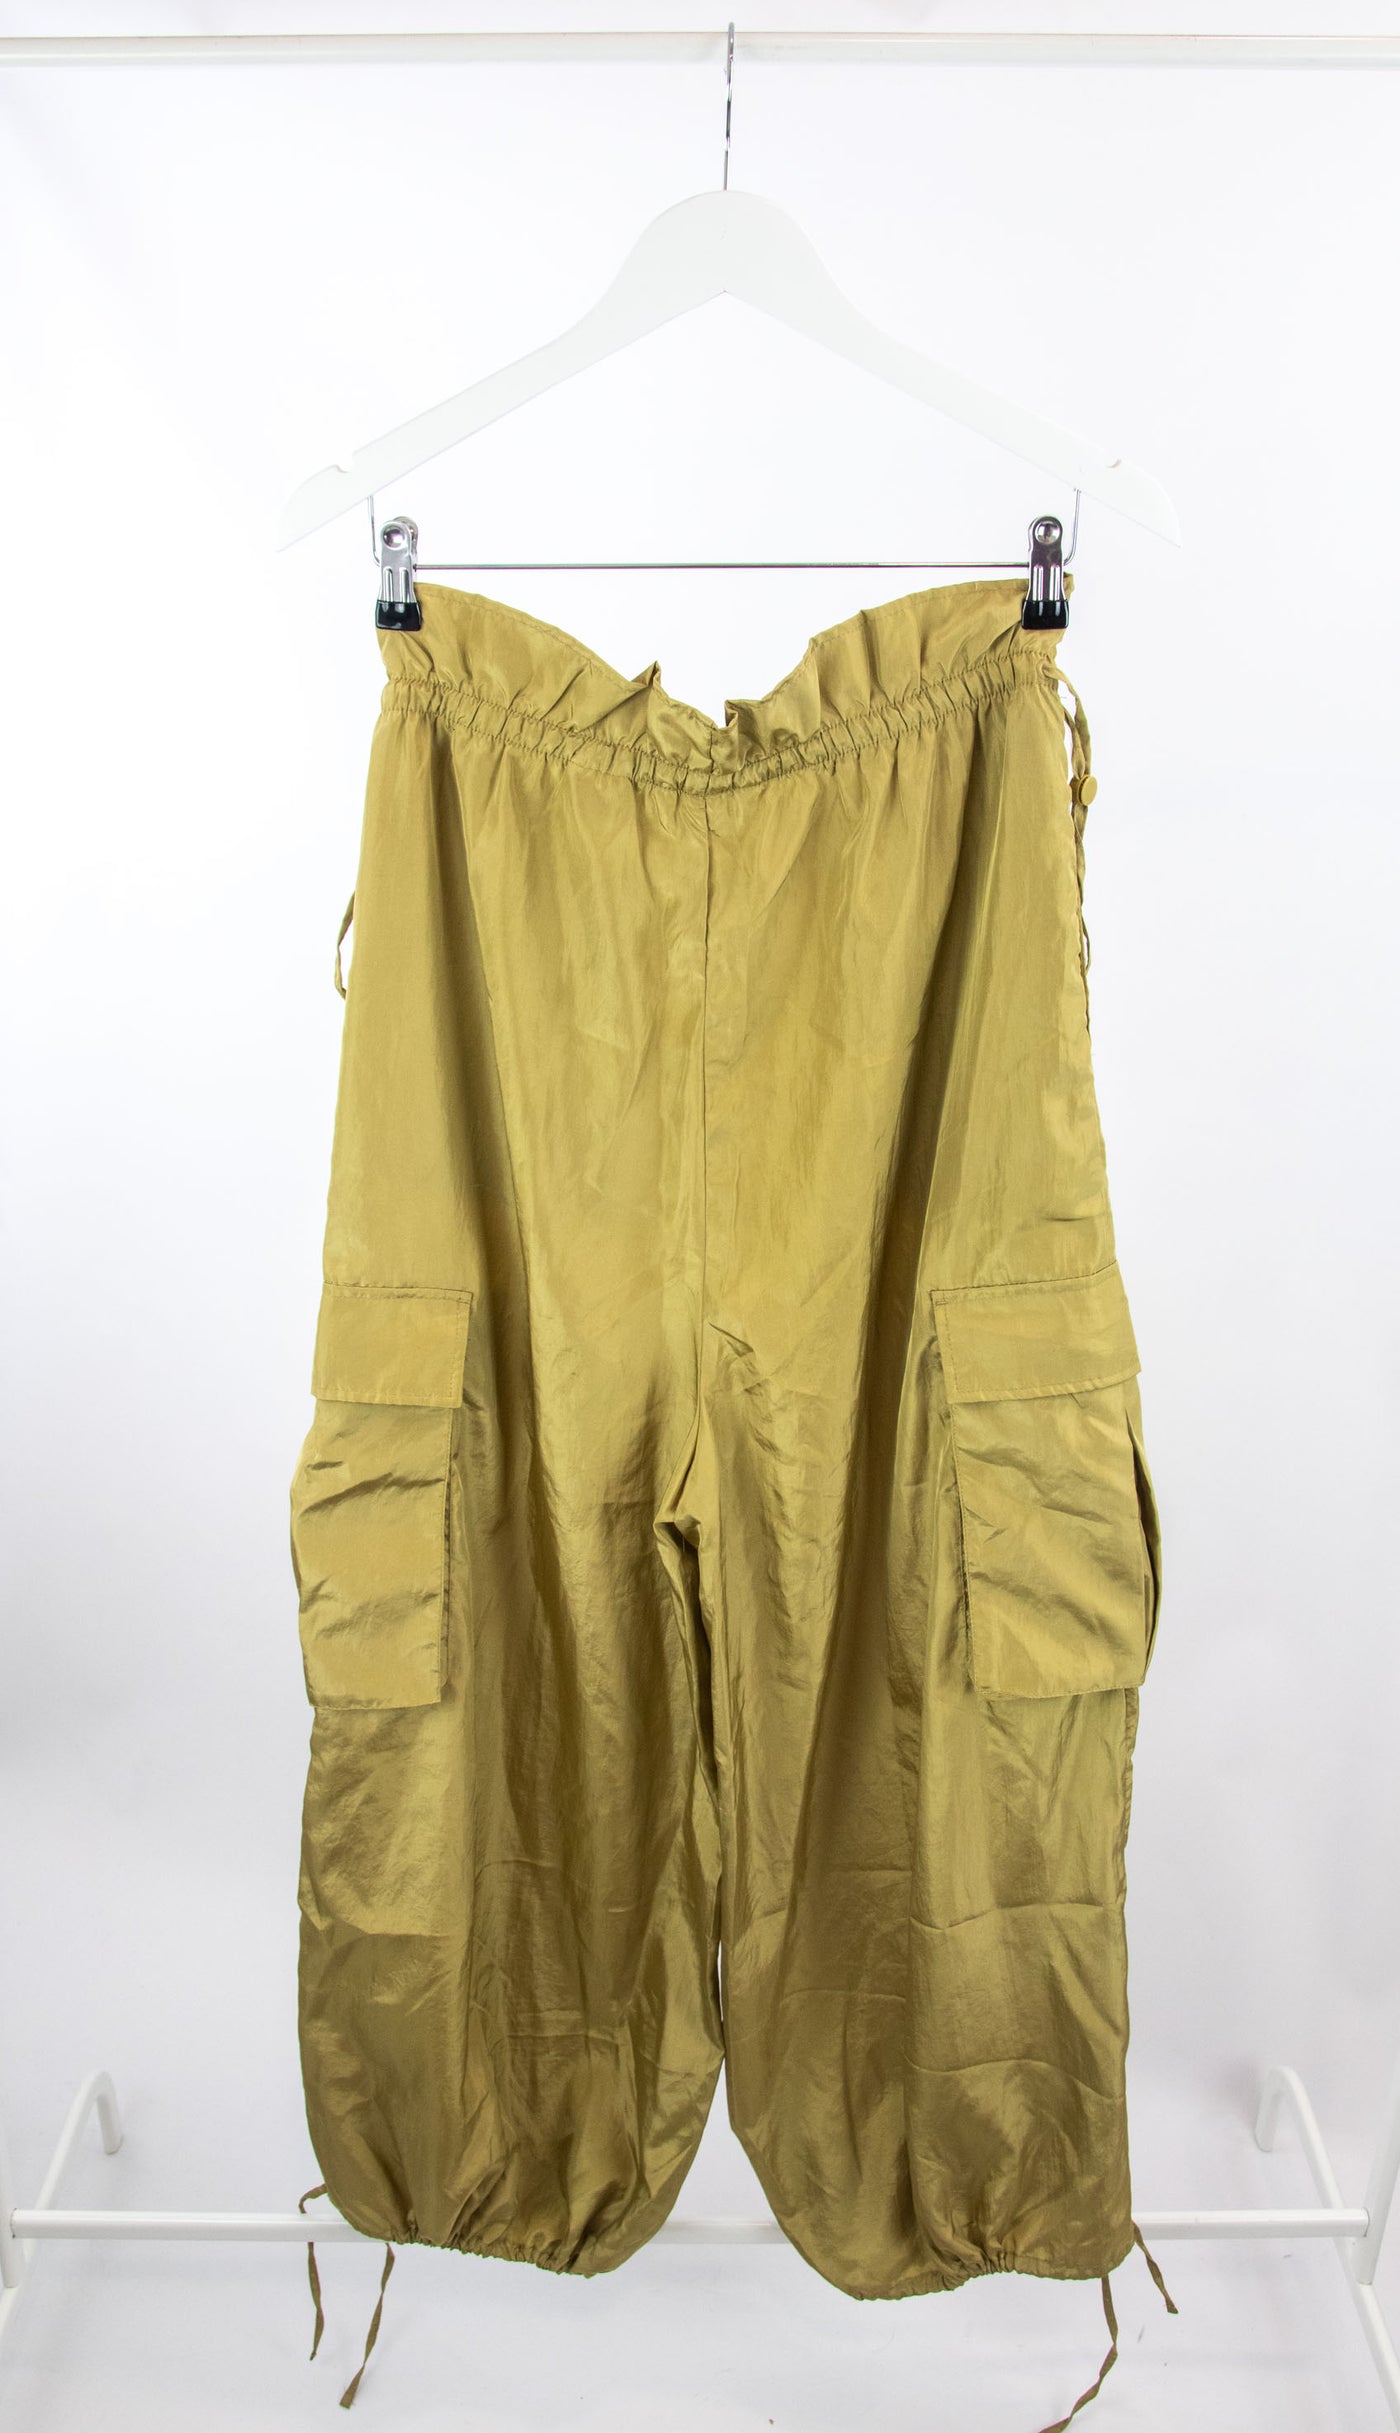 Pantalón dorado cargo